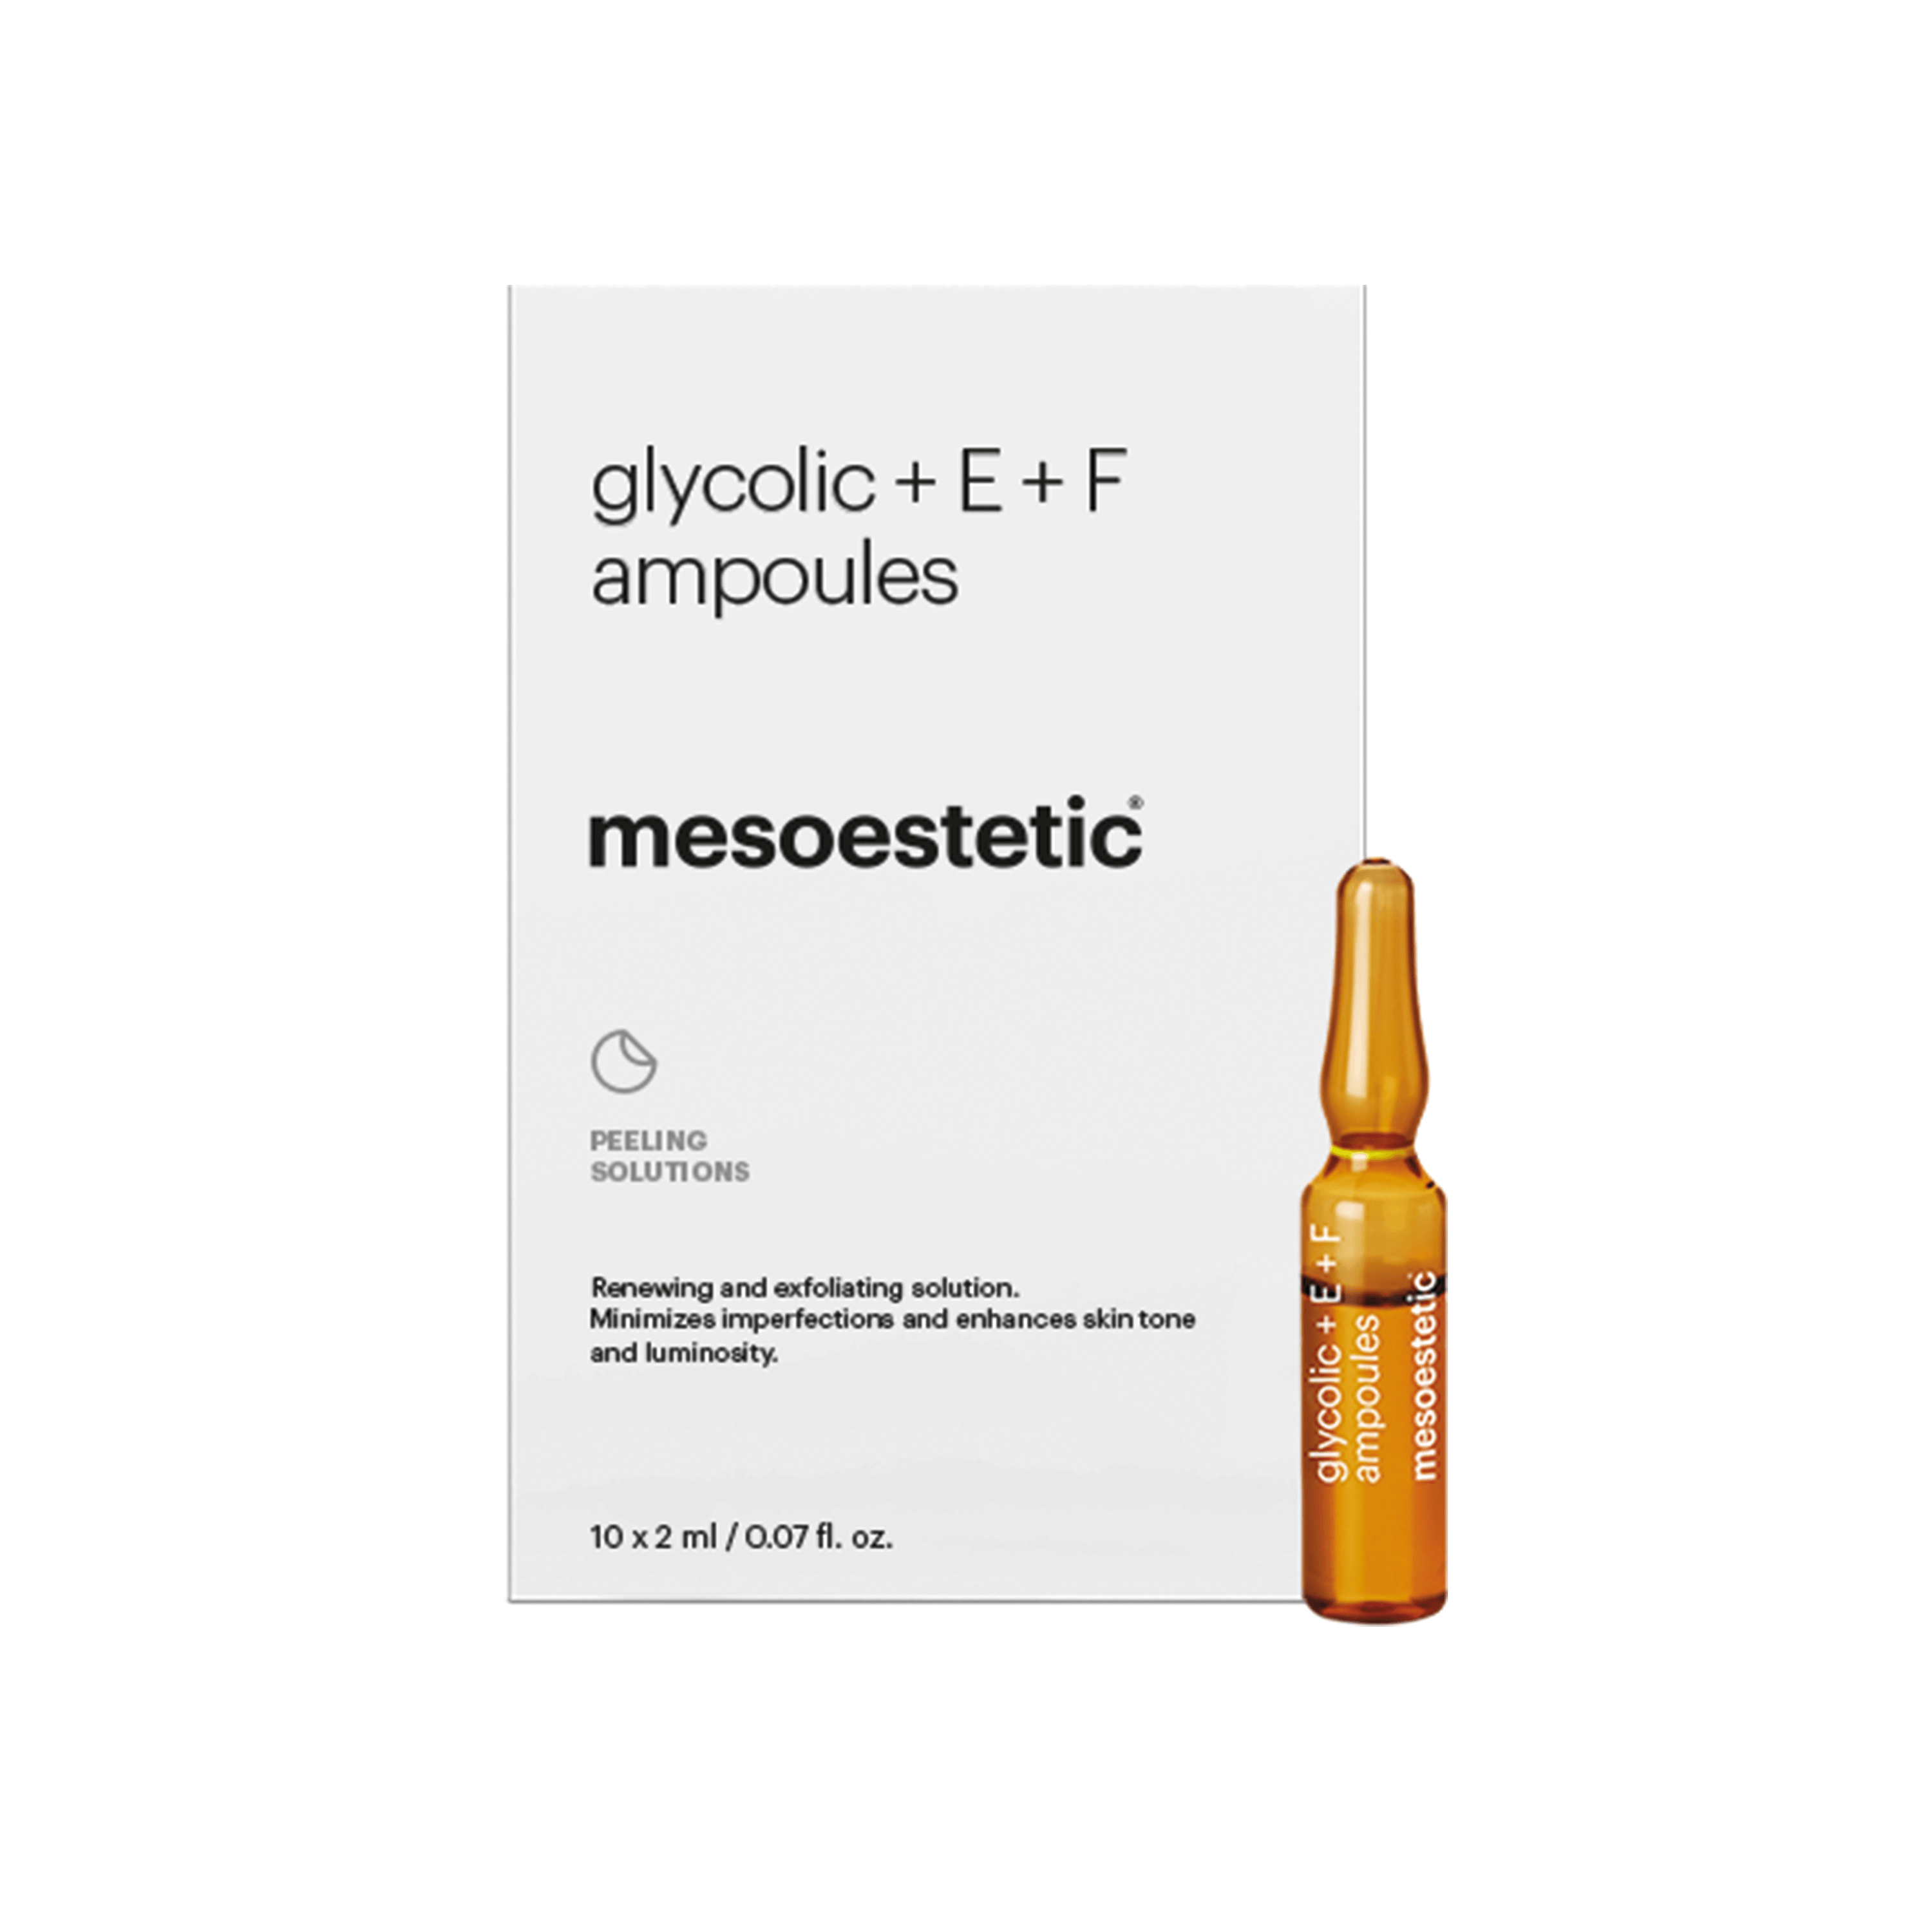 Se Mesoestetic Glycolic + E + F Ampoules - Antiage ampuller som øger hudtone - Effektiv mod behandling af tegn på aldring - 10 x 2 ml. - Bestil nu hos Mesoestetic